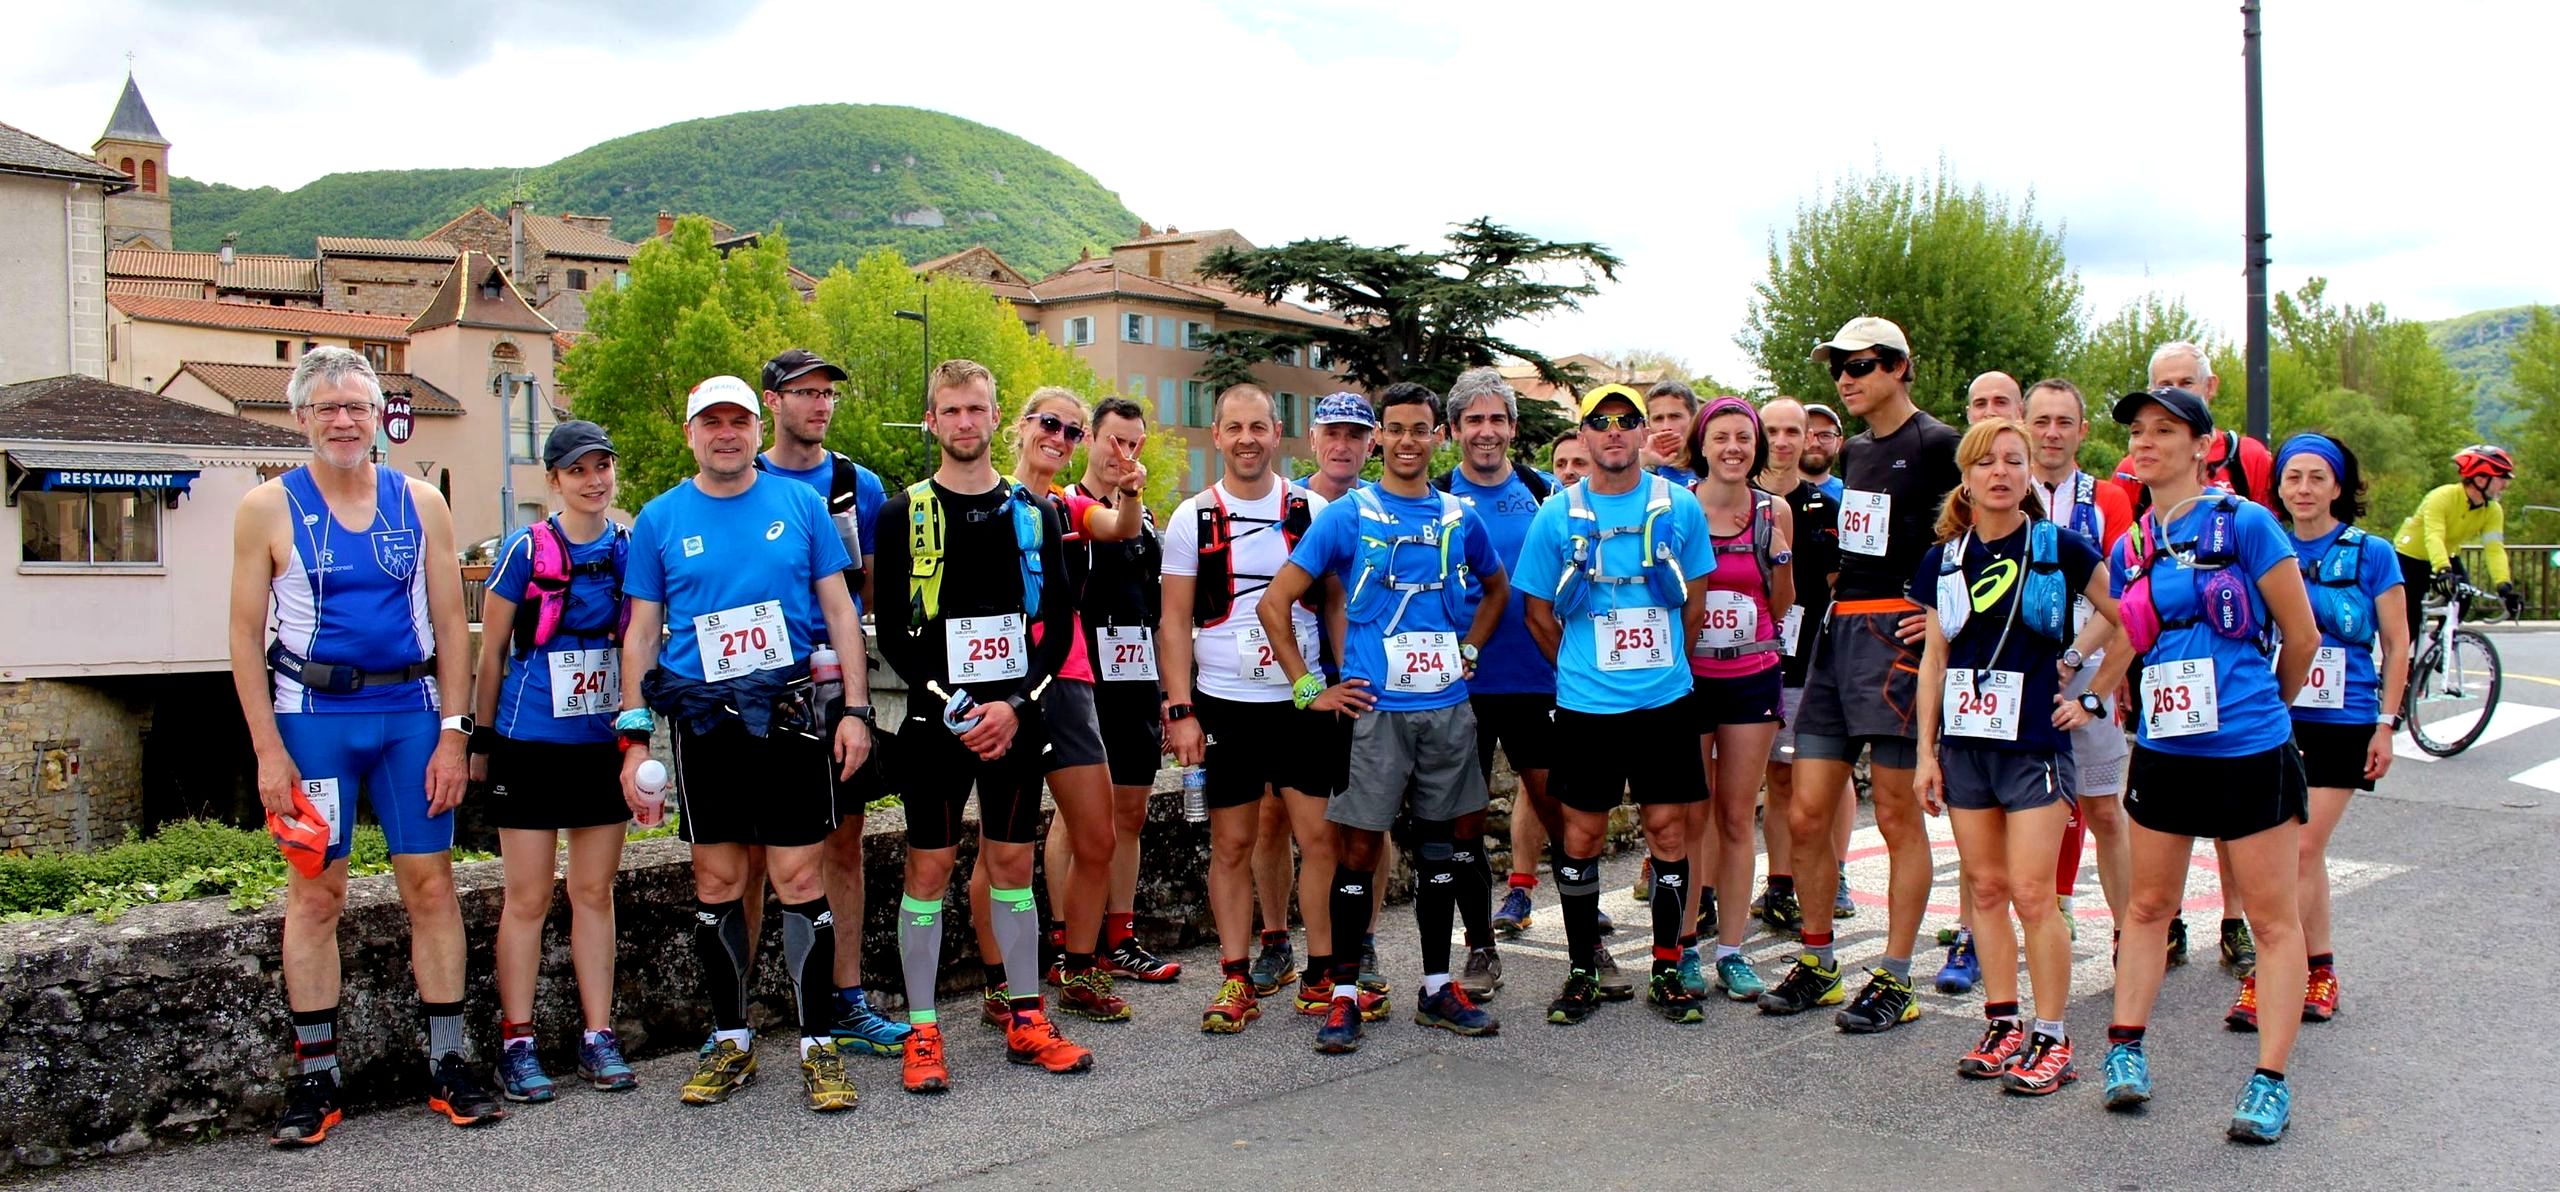 Les concurrents de Verti-Eiffage (28 km)et de Luz'en Trail (12 km) se préparent